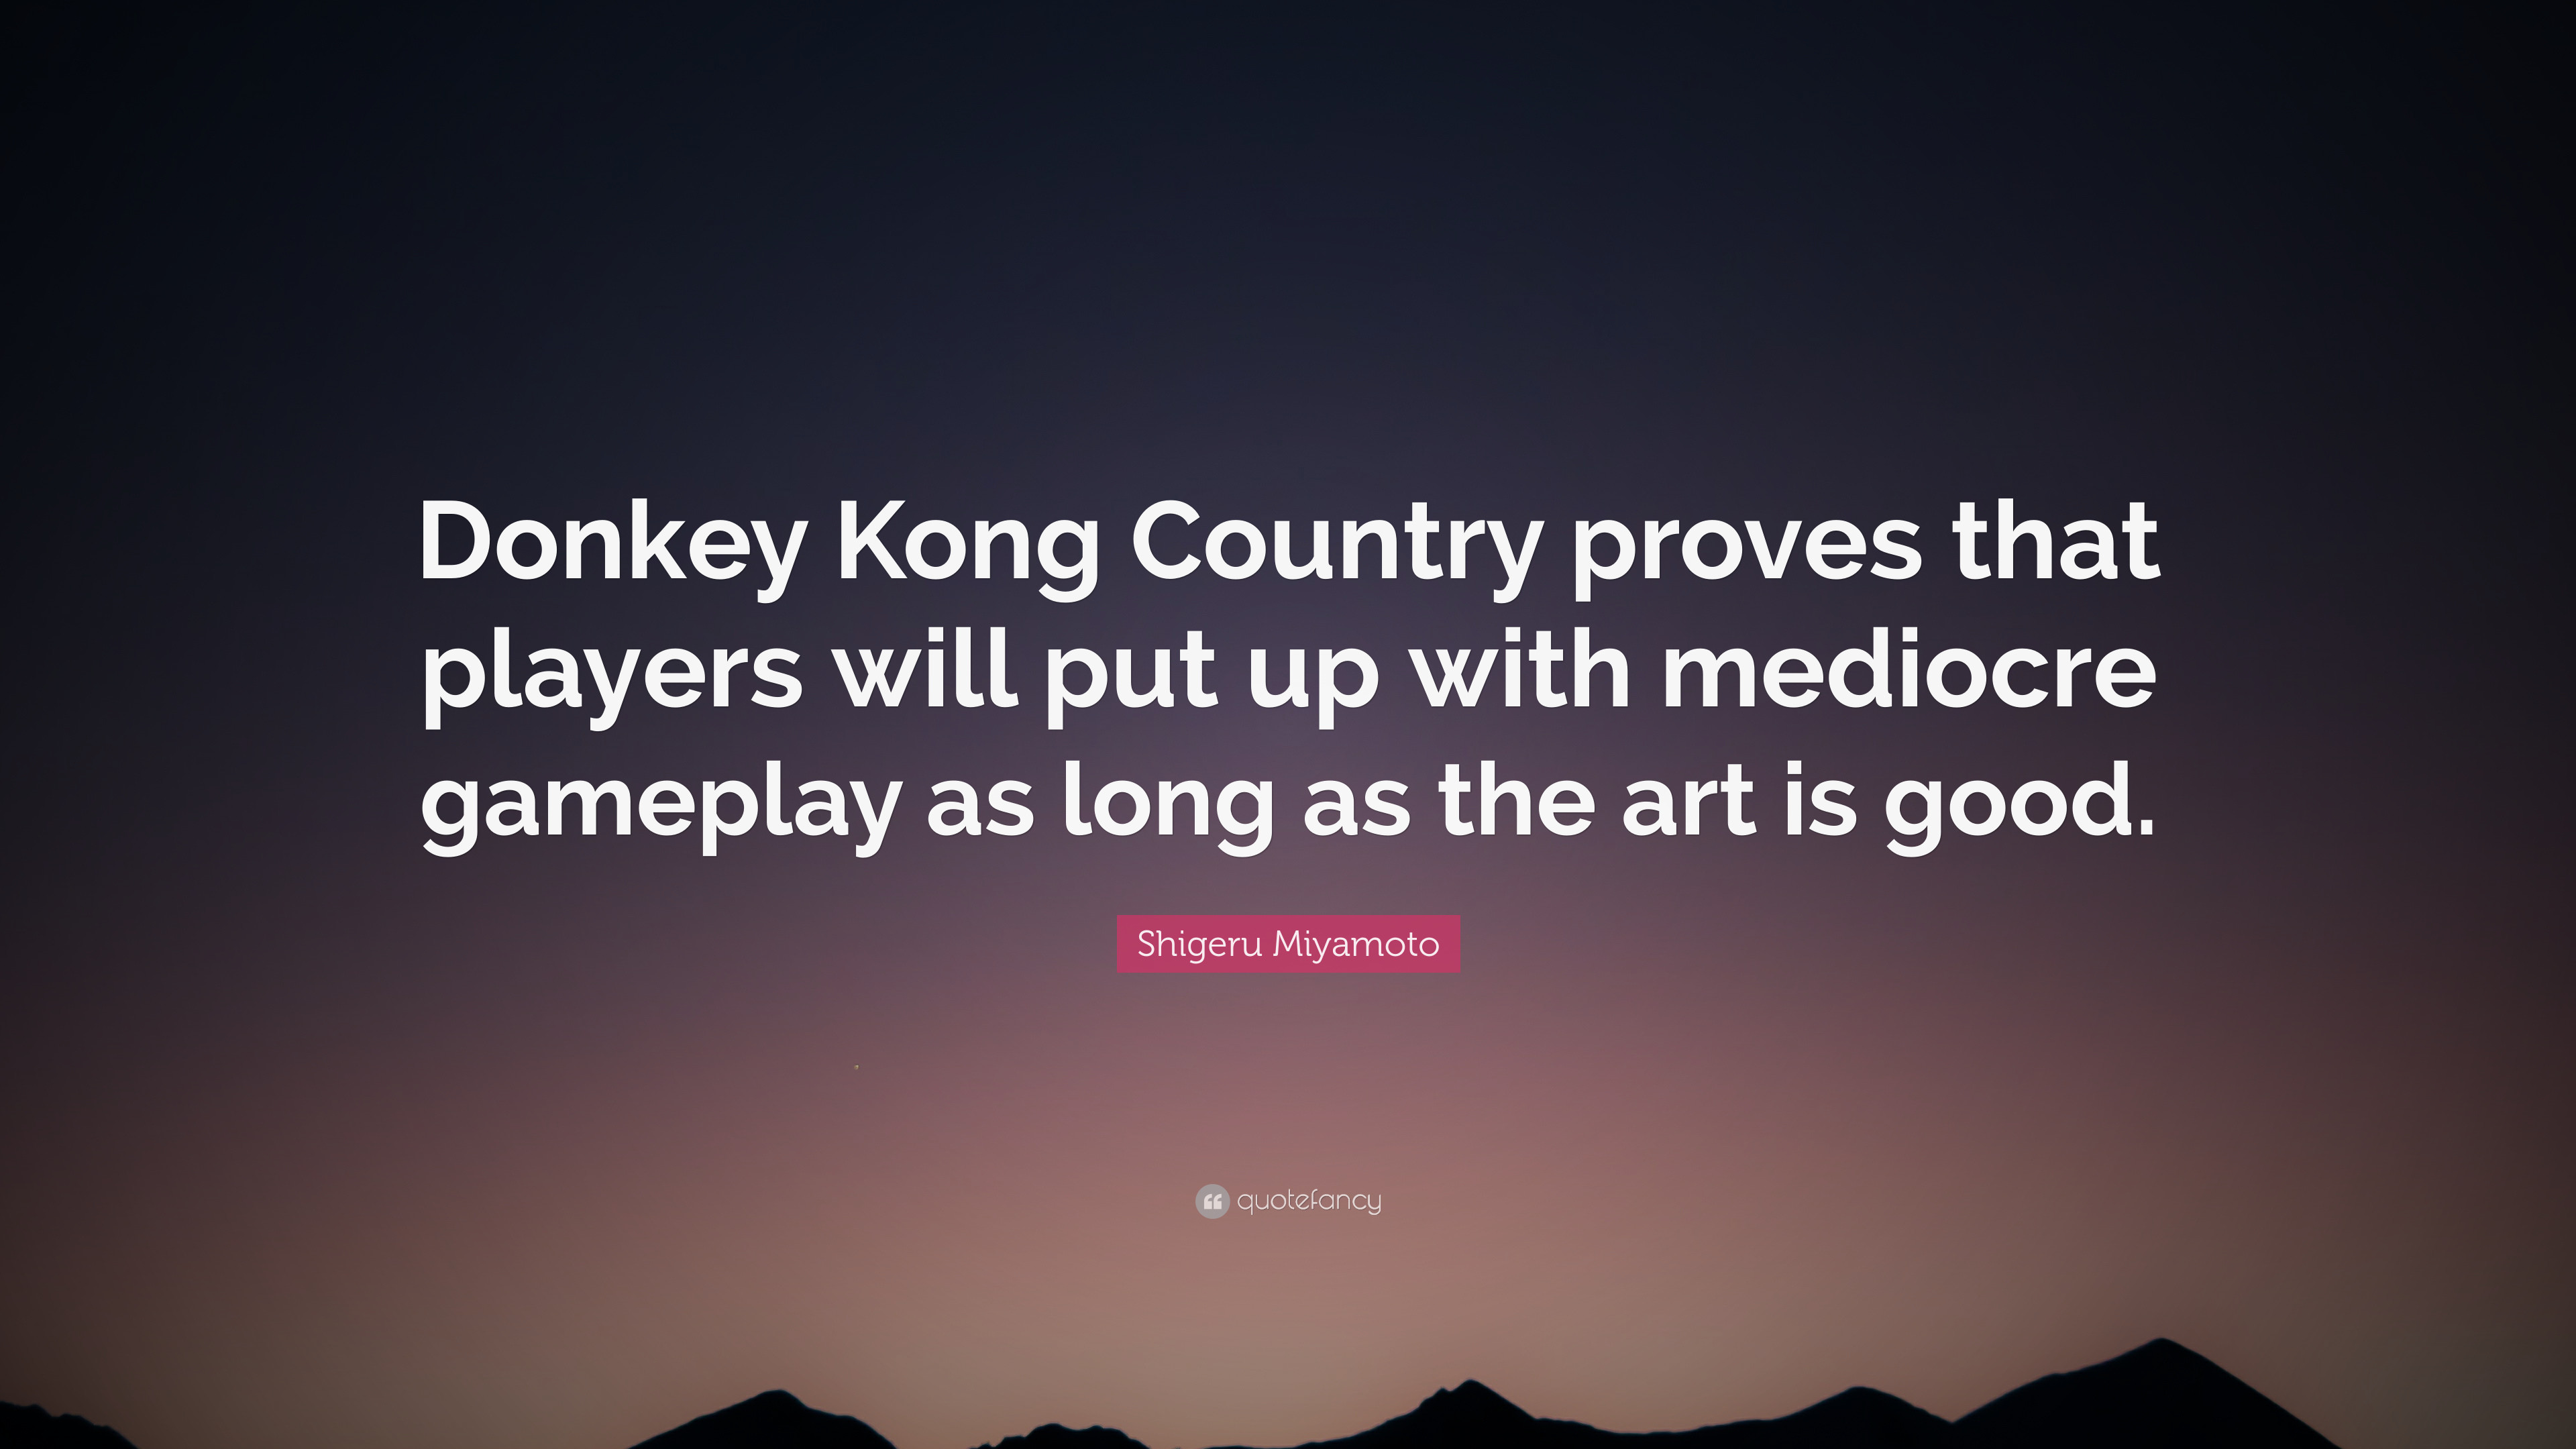 3840x2160 7 wallpapers. Shigeru Miyamoto Quote: “Donkey Kong Country ...